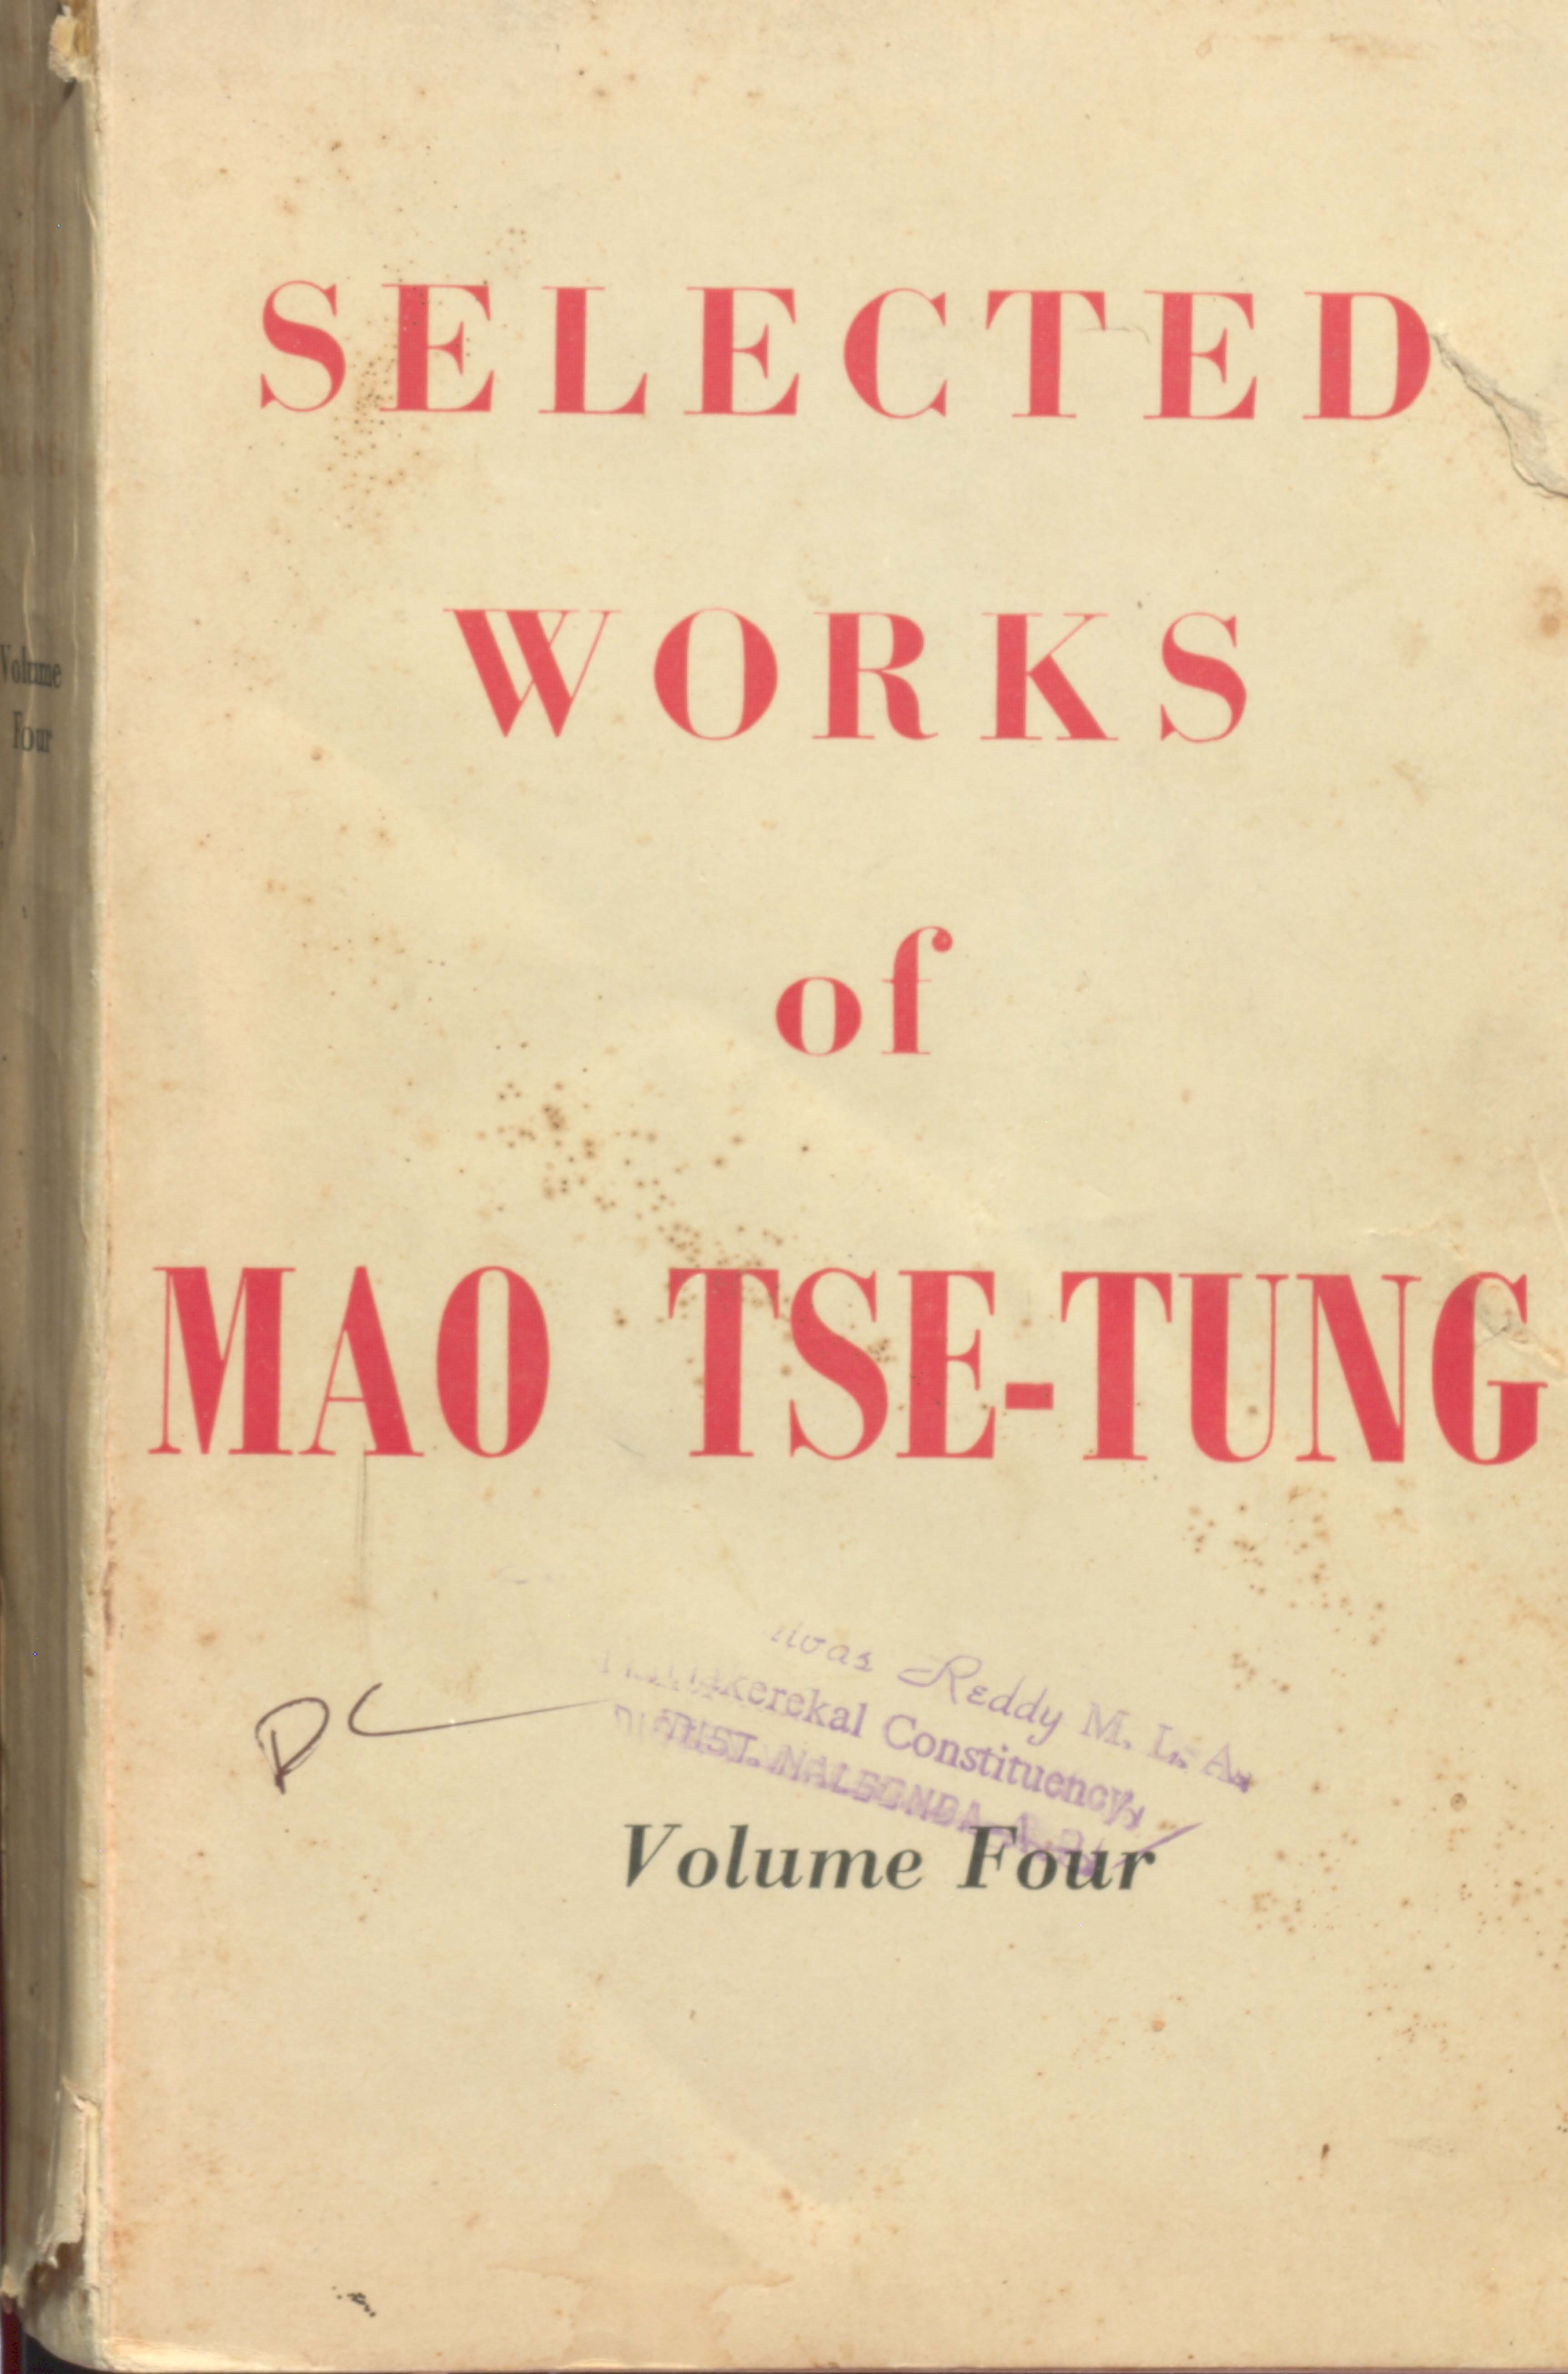 Selected works of man tse-tung (vol-4)